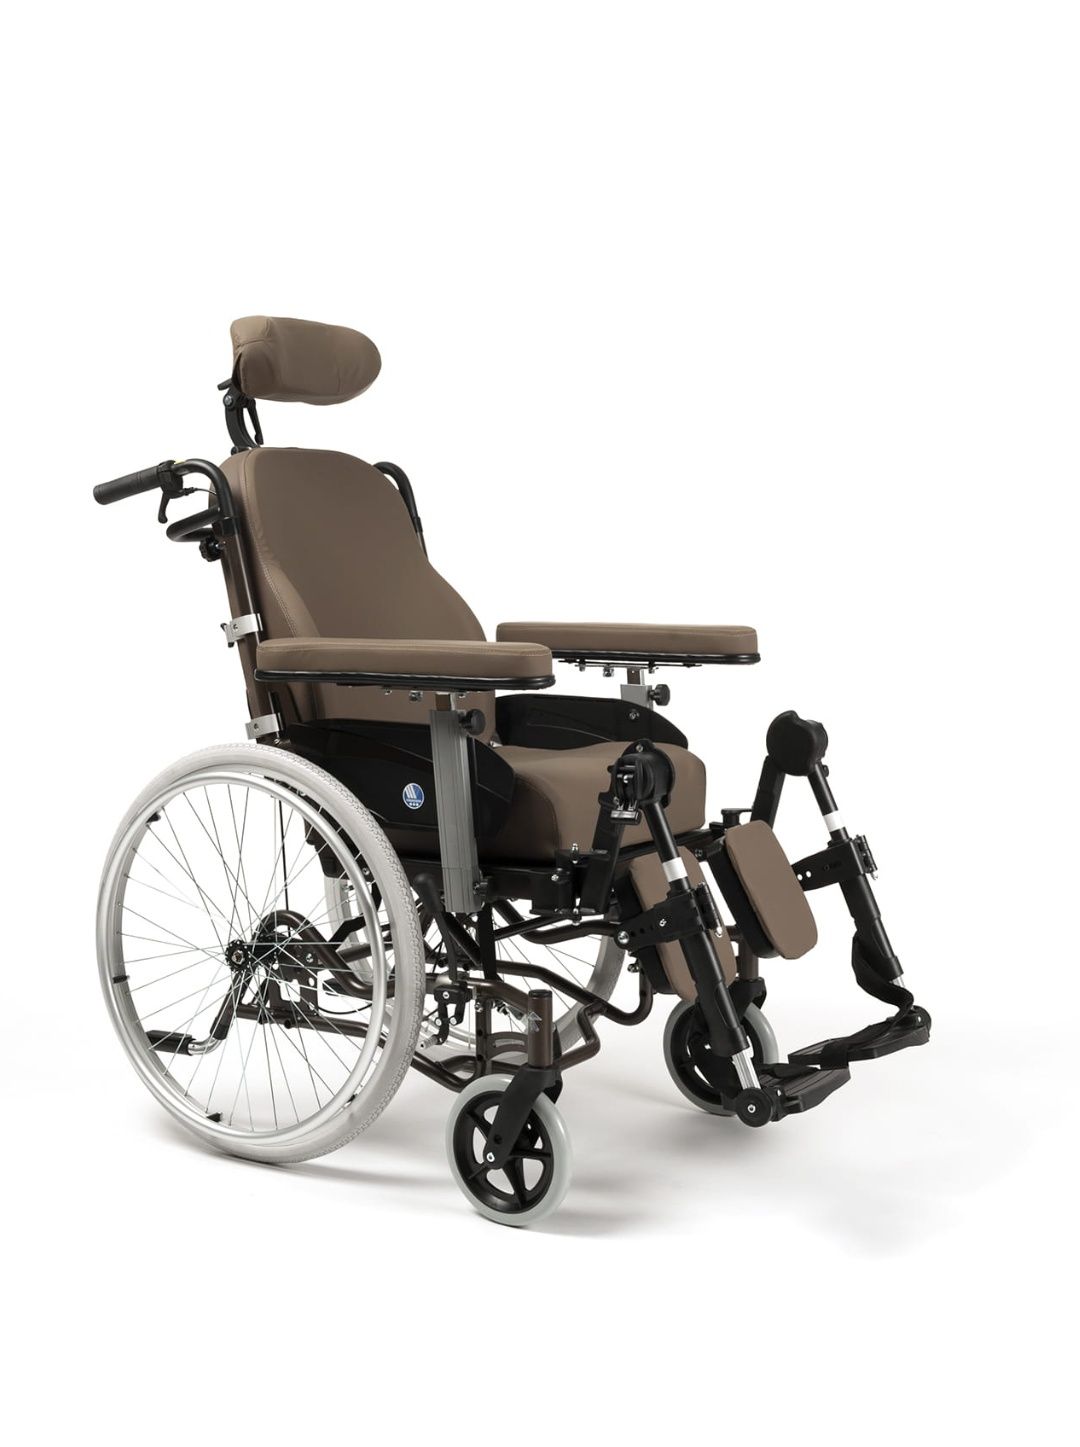 Wózek inwalidzki specjalistyczny sprzedam.